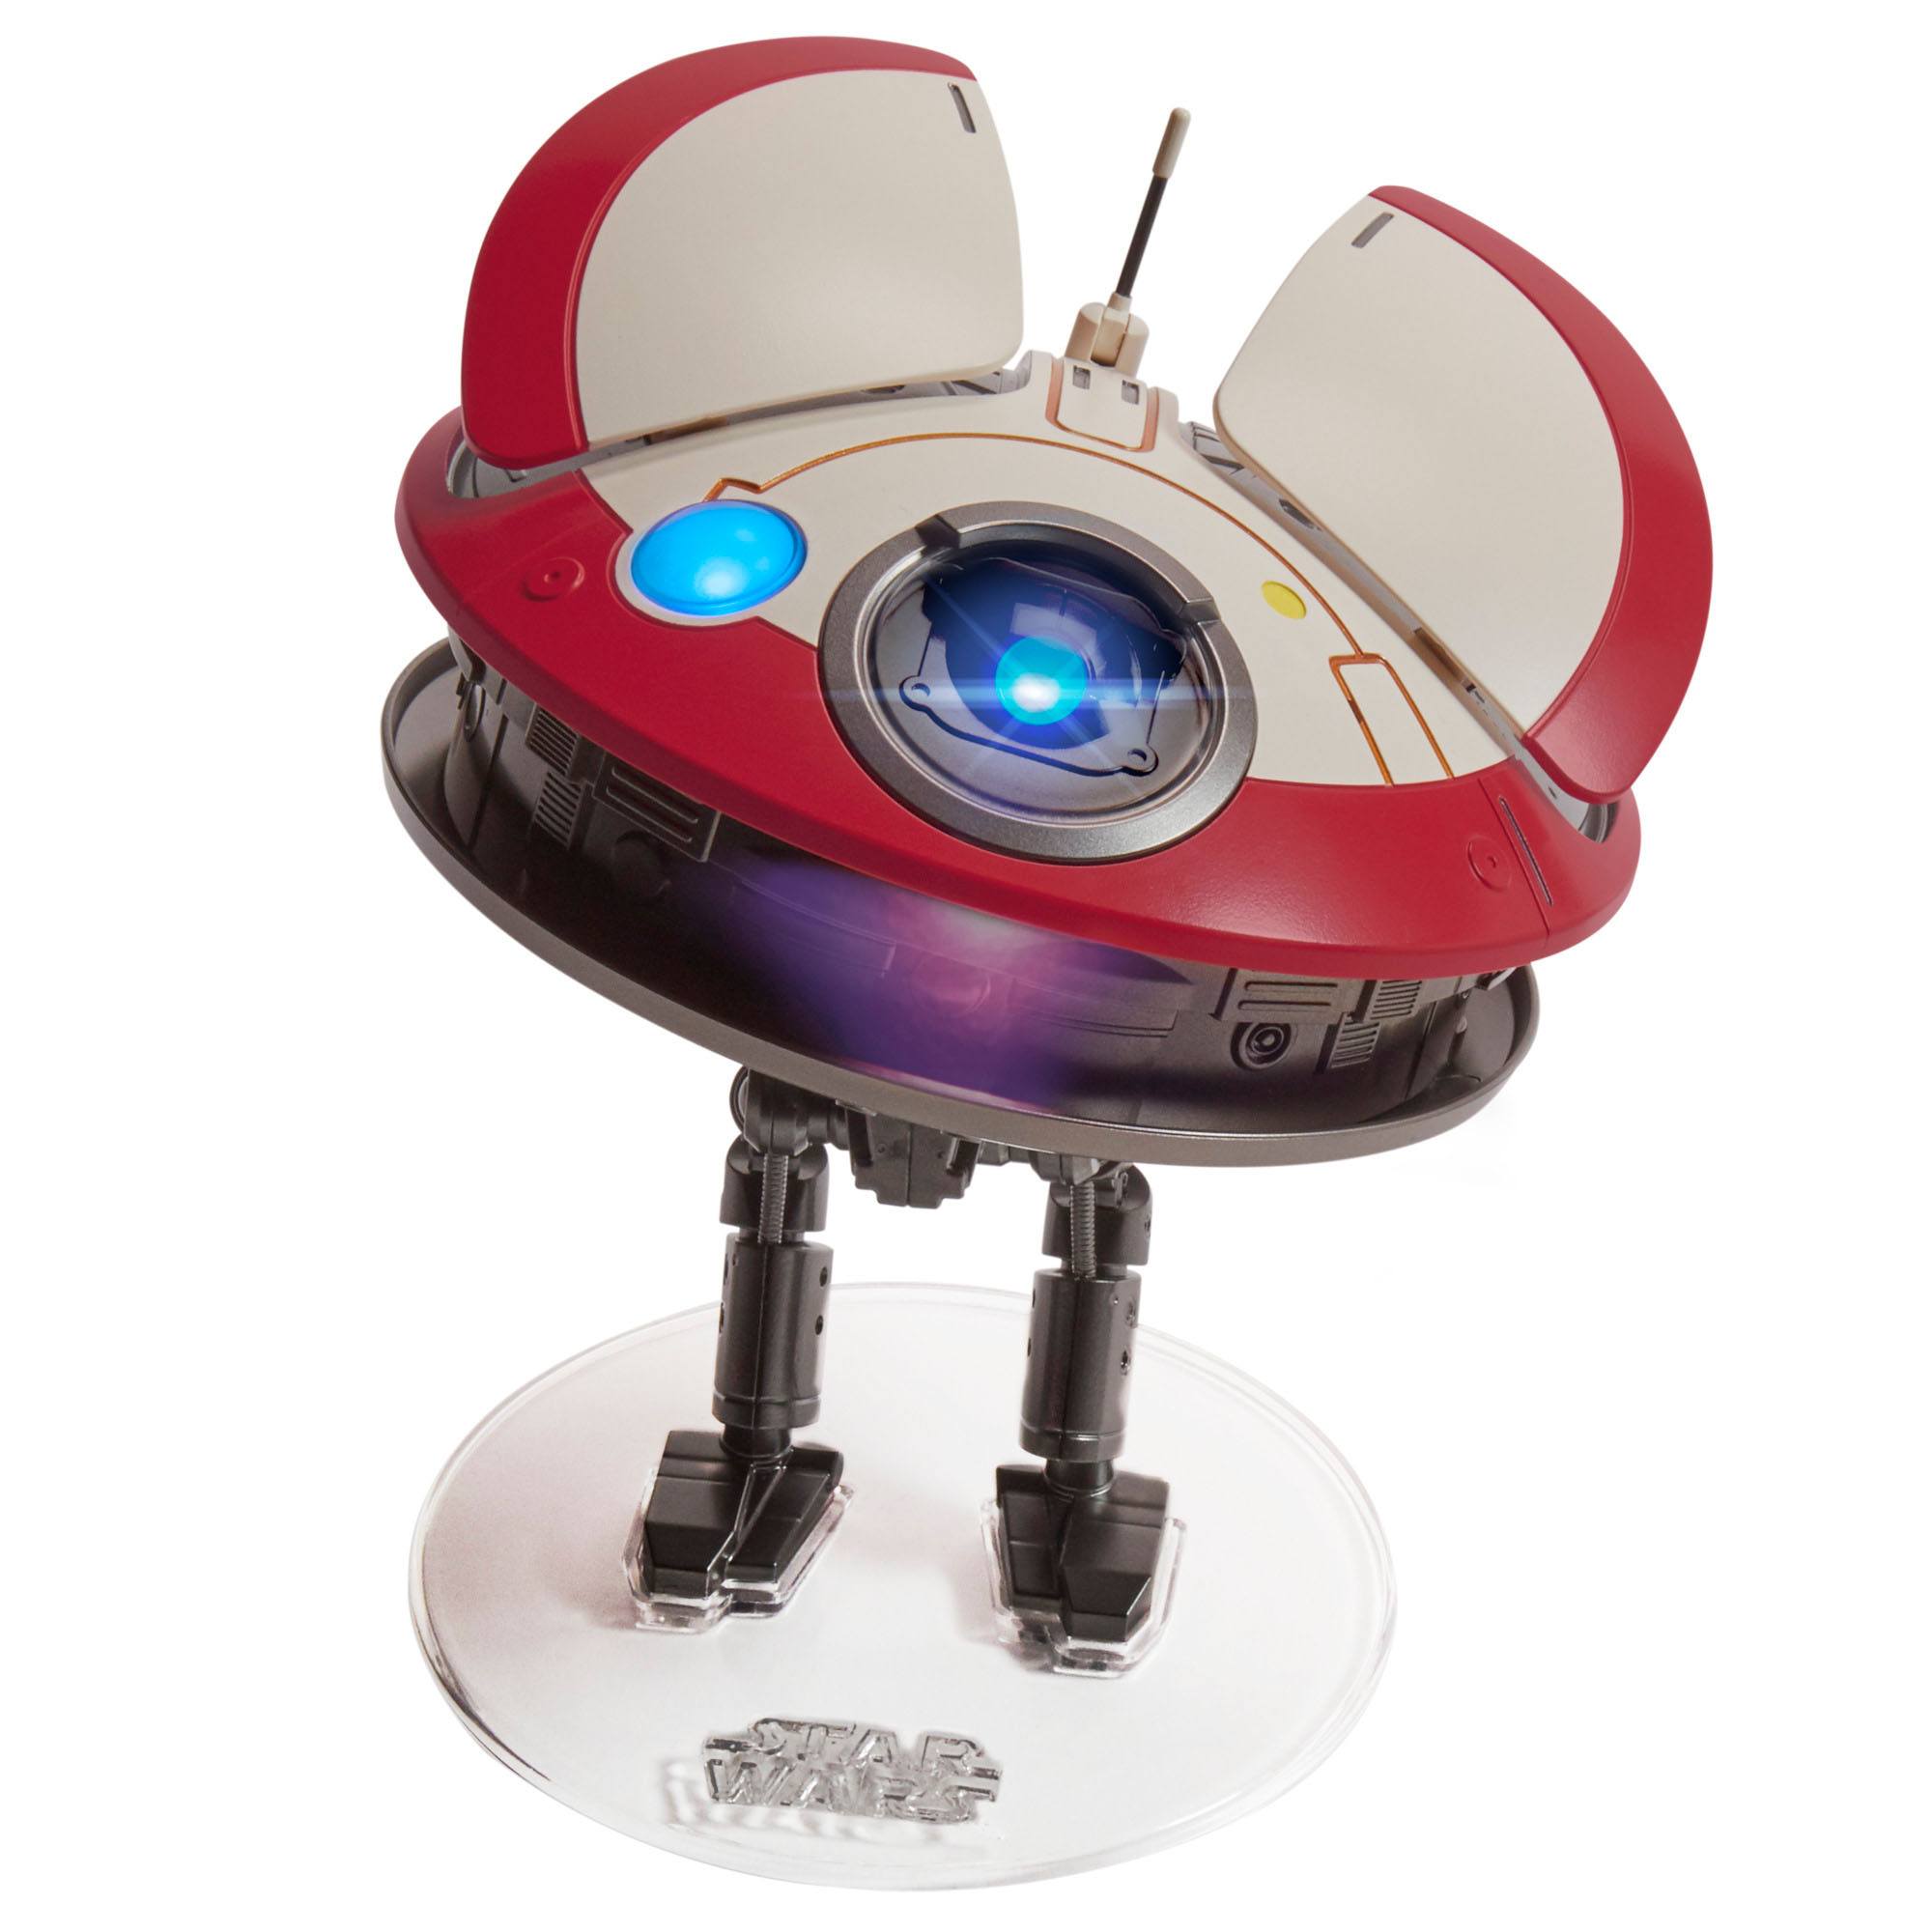 Star Wars: Obi-Wan Kenobi Elektronische Figur LO-LA59 (Lola) Animatronic Edition 15 cm HASF3918 5010994137342